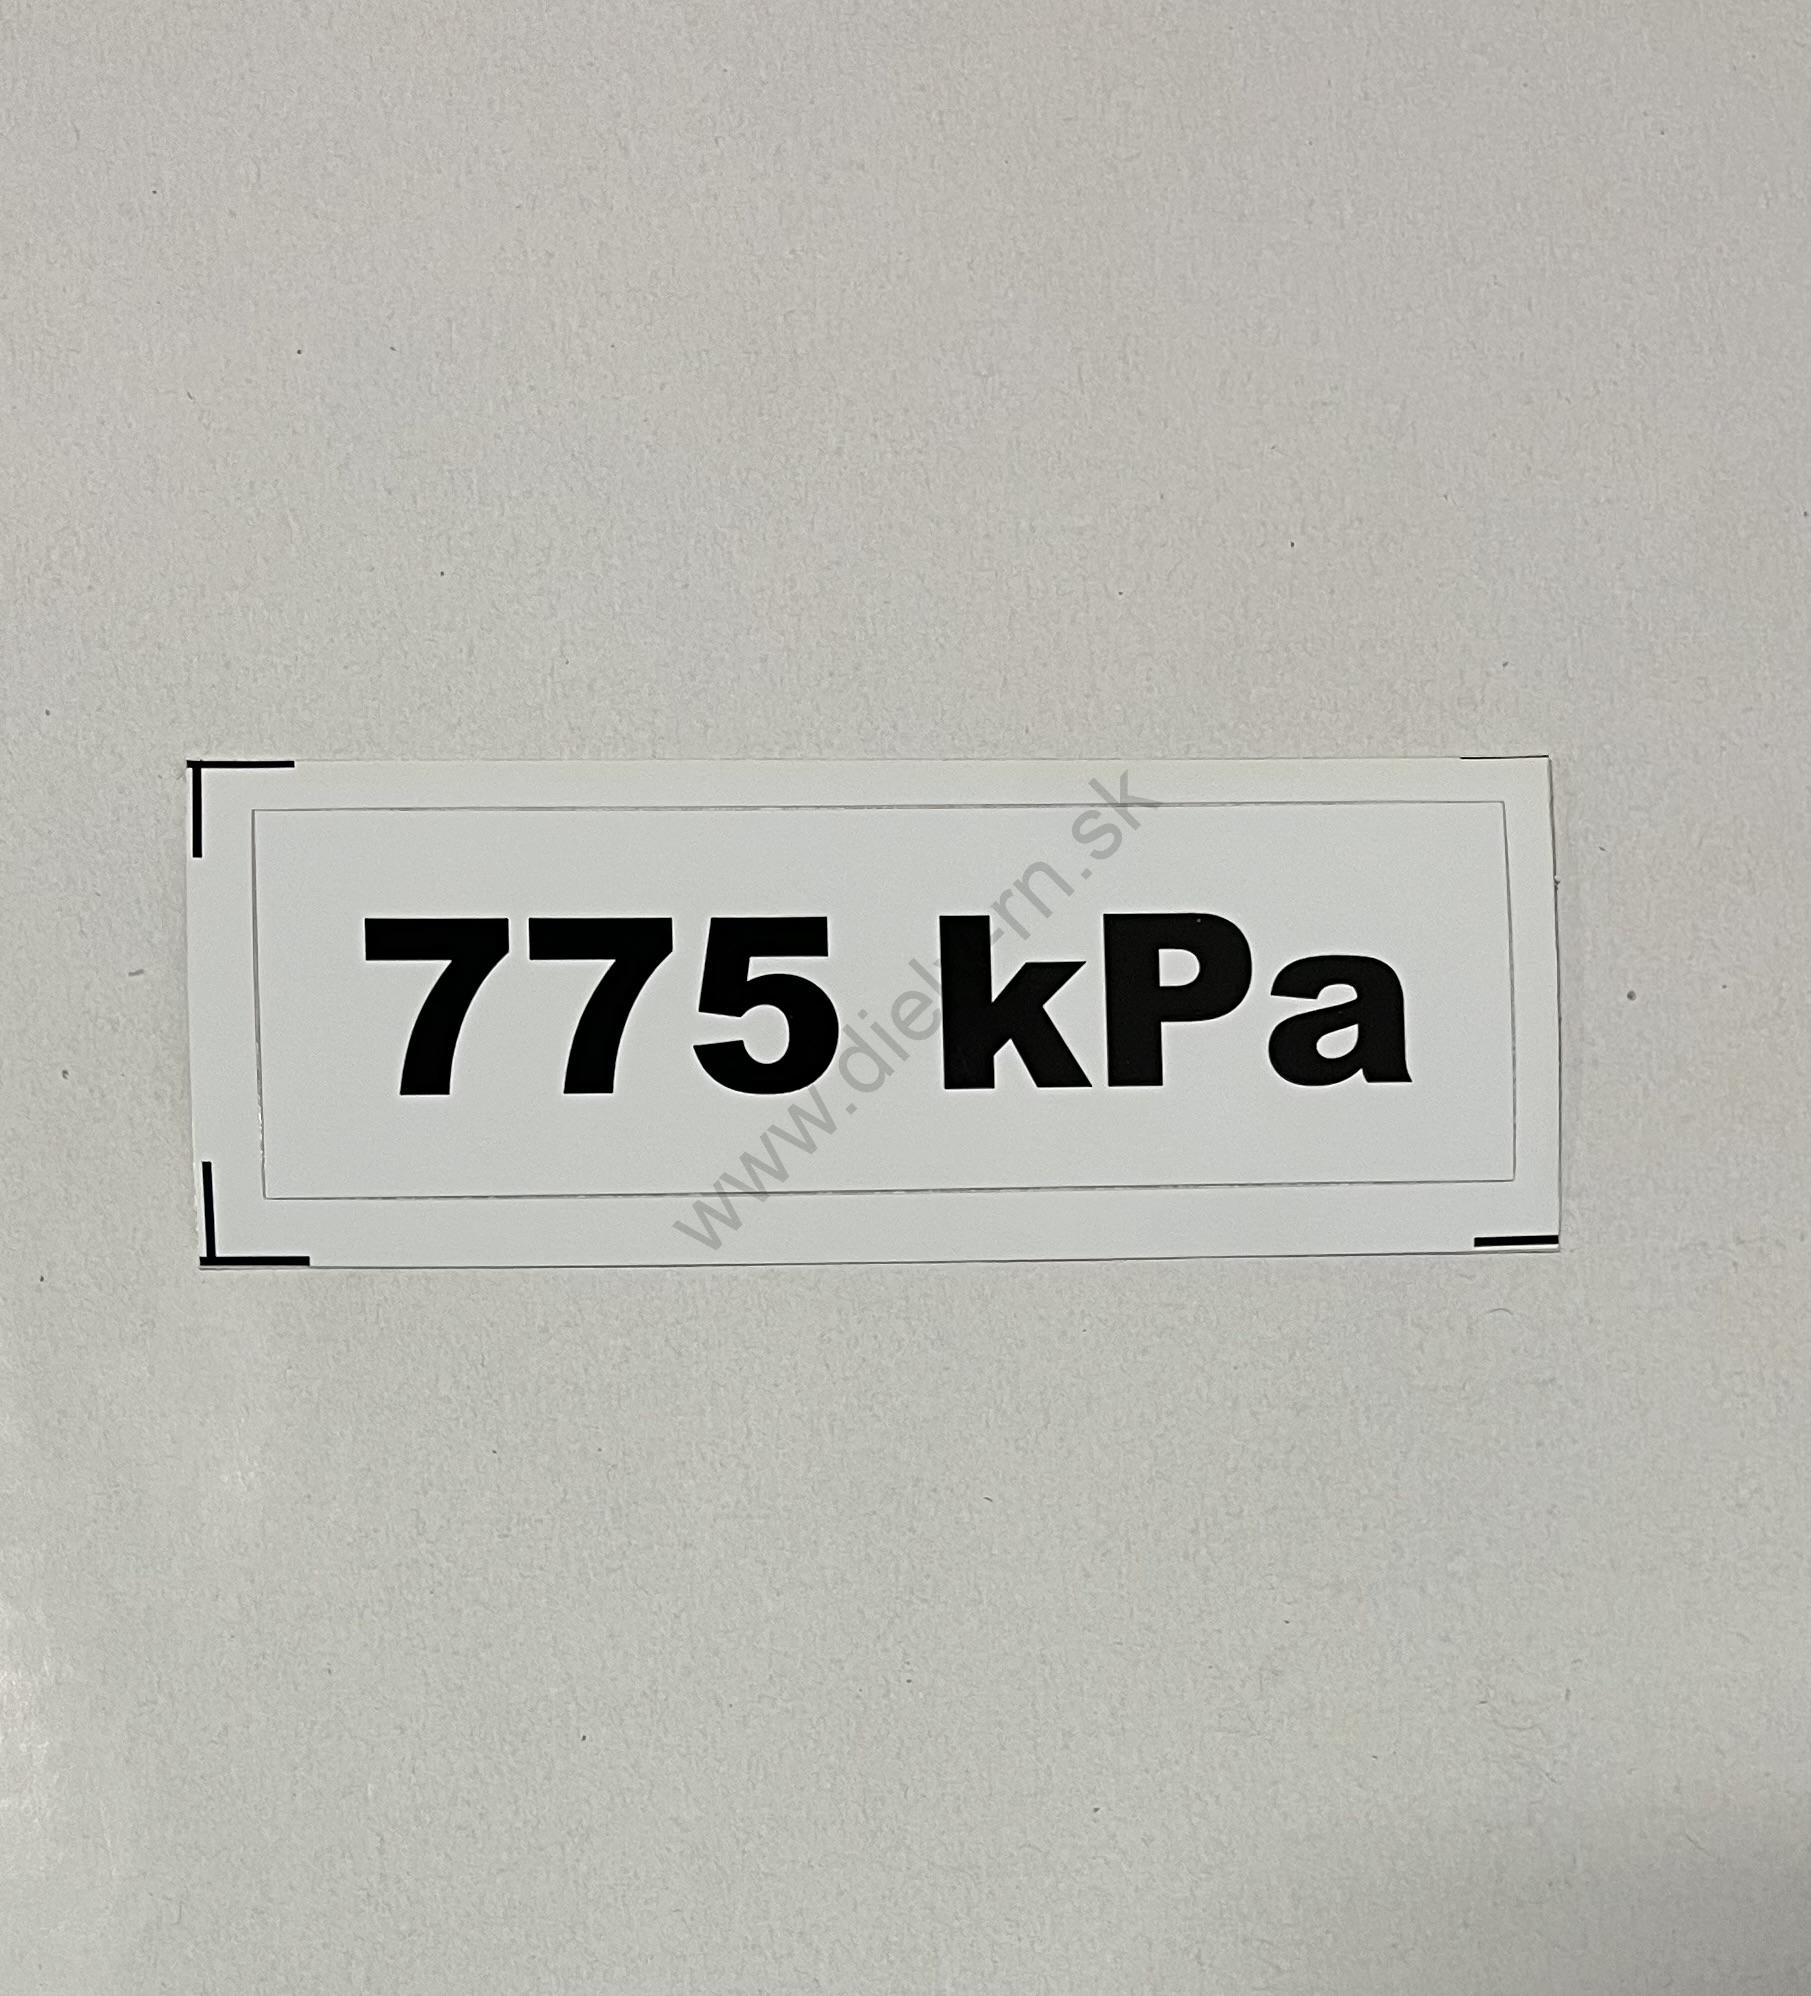 Označenie kPa 775